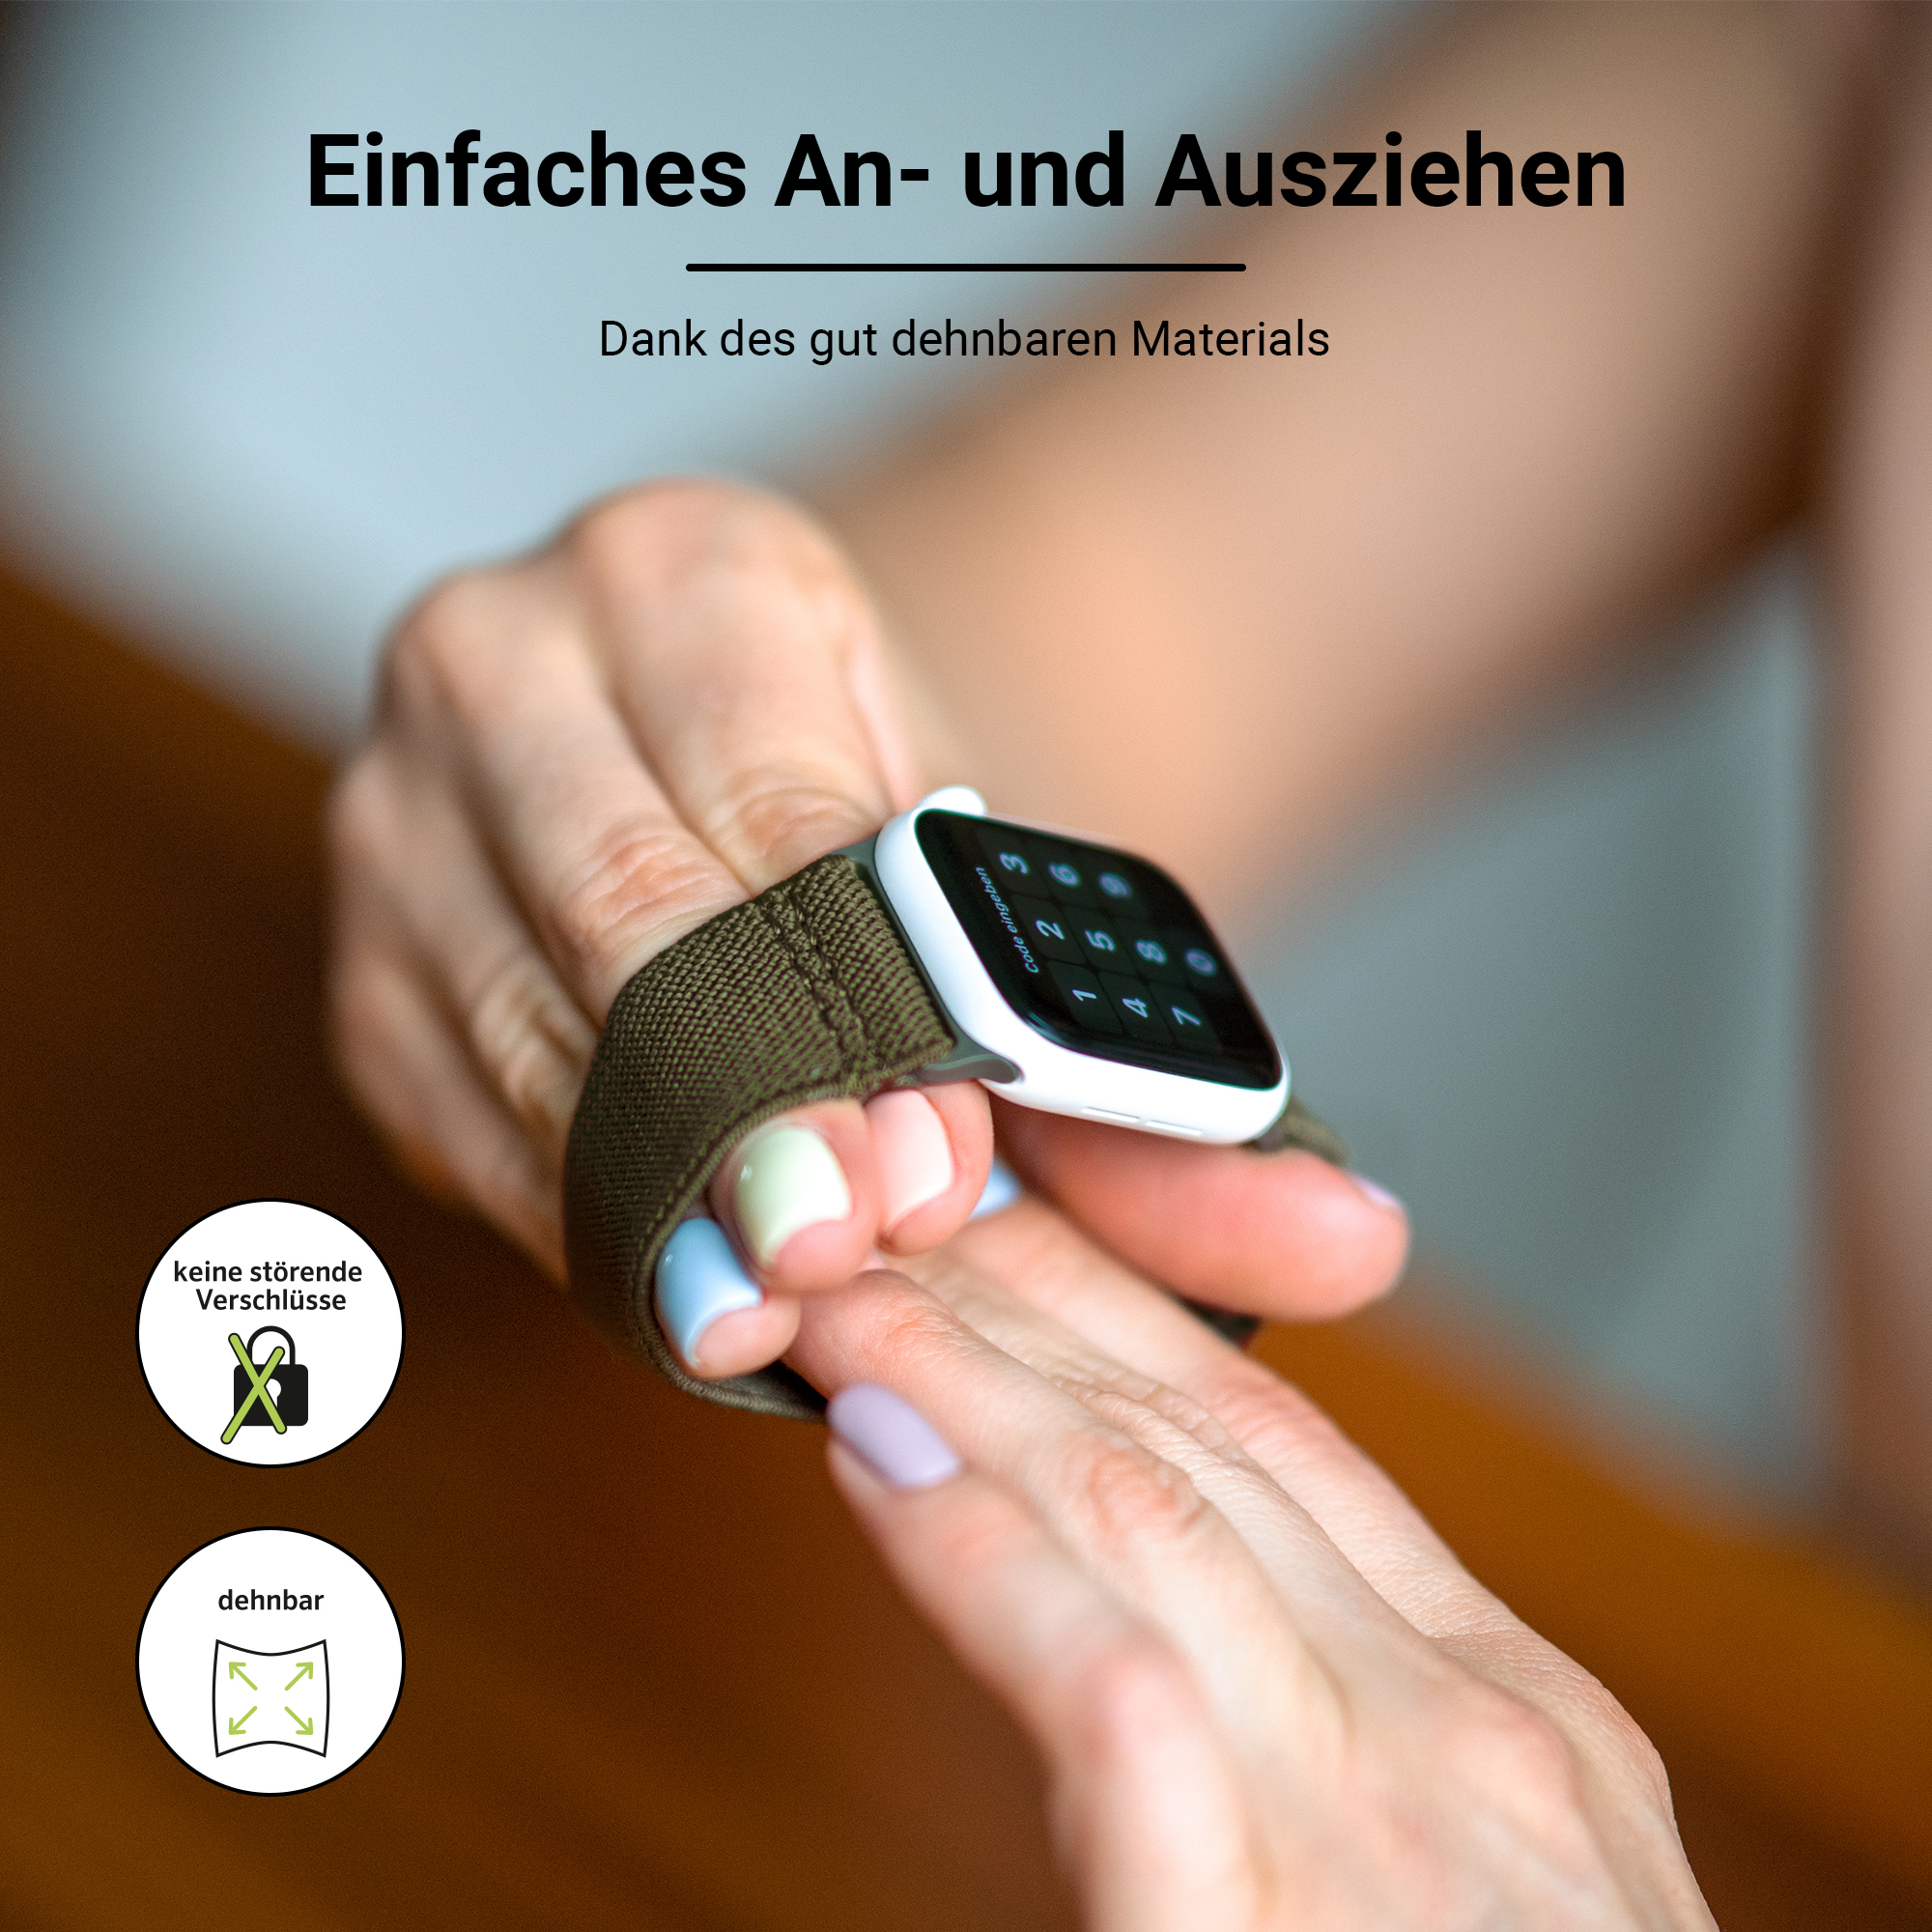 ARTWIZZ WatchBand Flex, Ersatzarmband, Grau Apple, Watch (41mm), (40mm), Apple 3-1 (38mm), & 9-7 6-4 SE Series